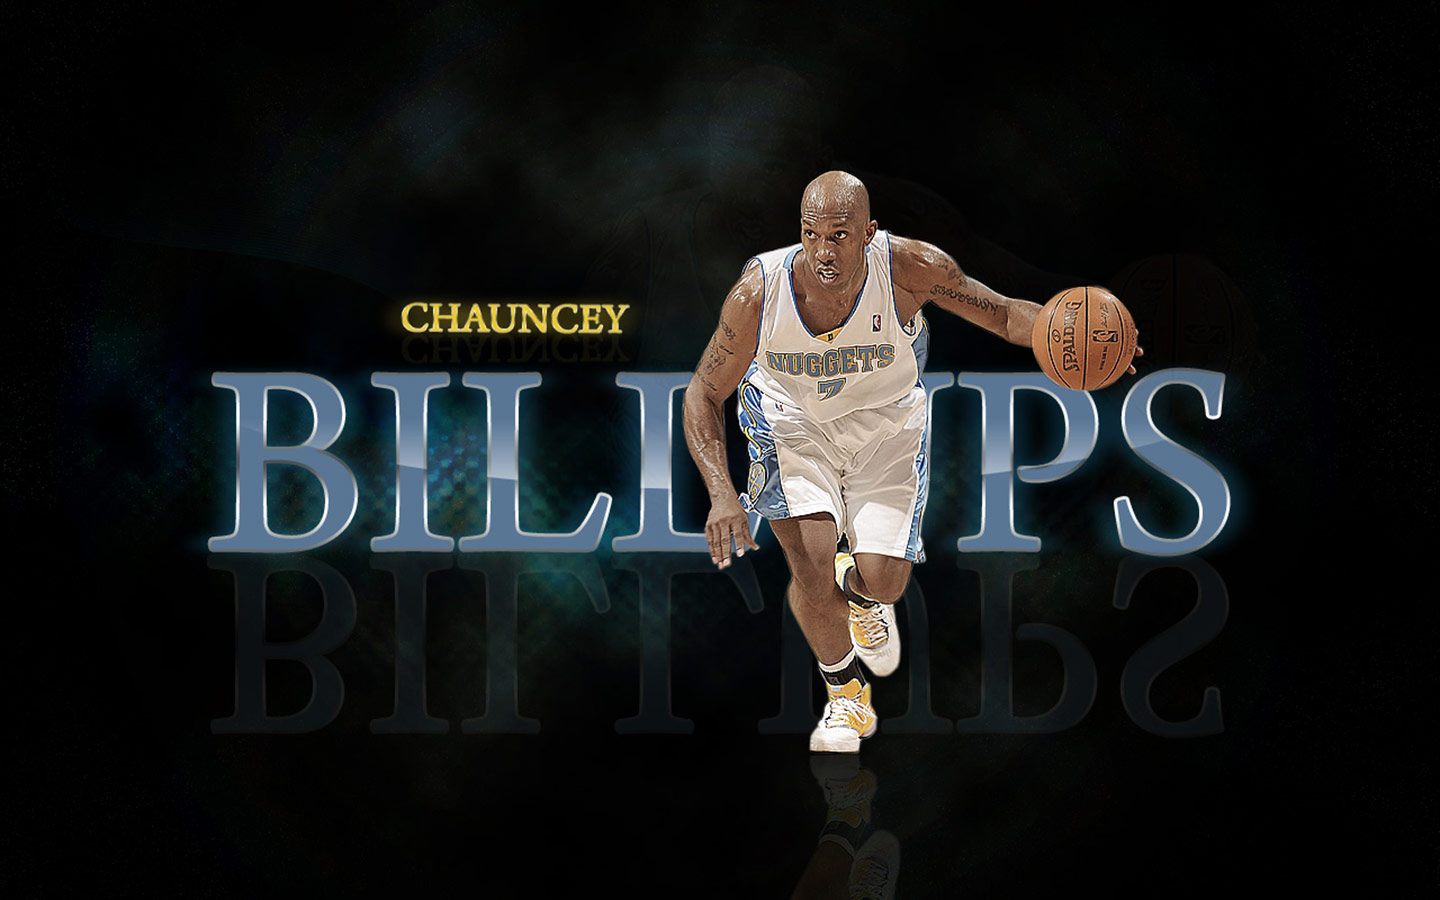 CHAUNCEY BILLUPS Nuggets Widescreen Wallpaper - Basketball Wallpapers